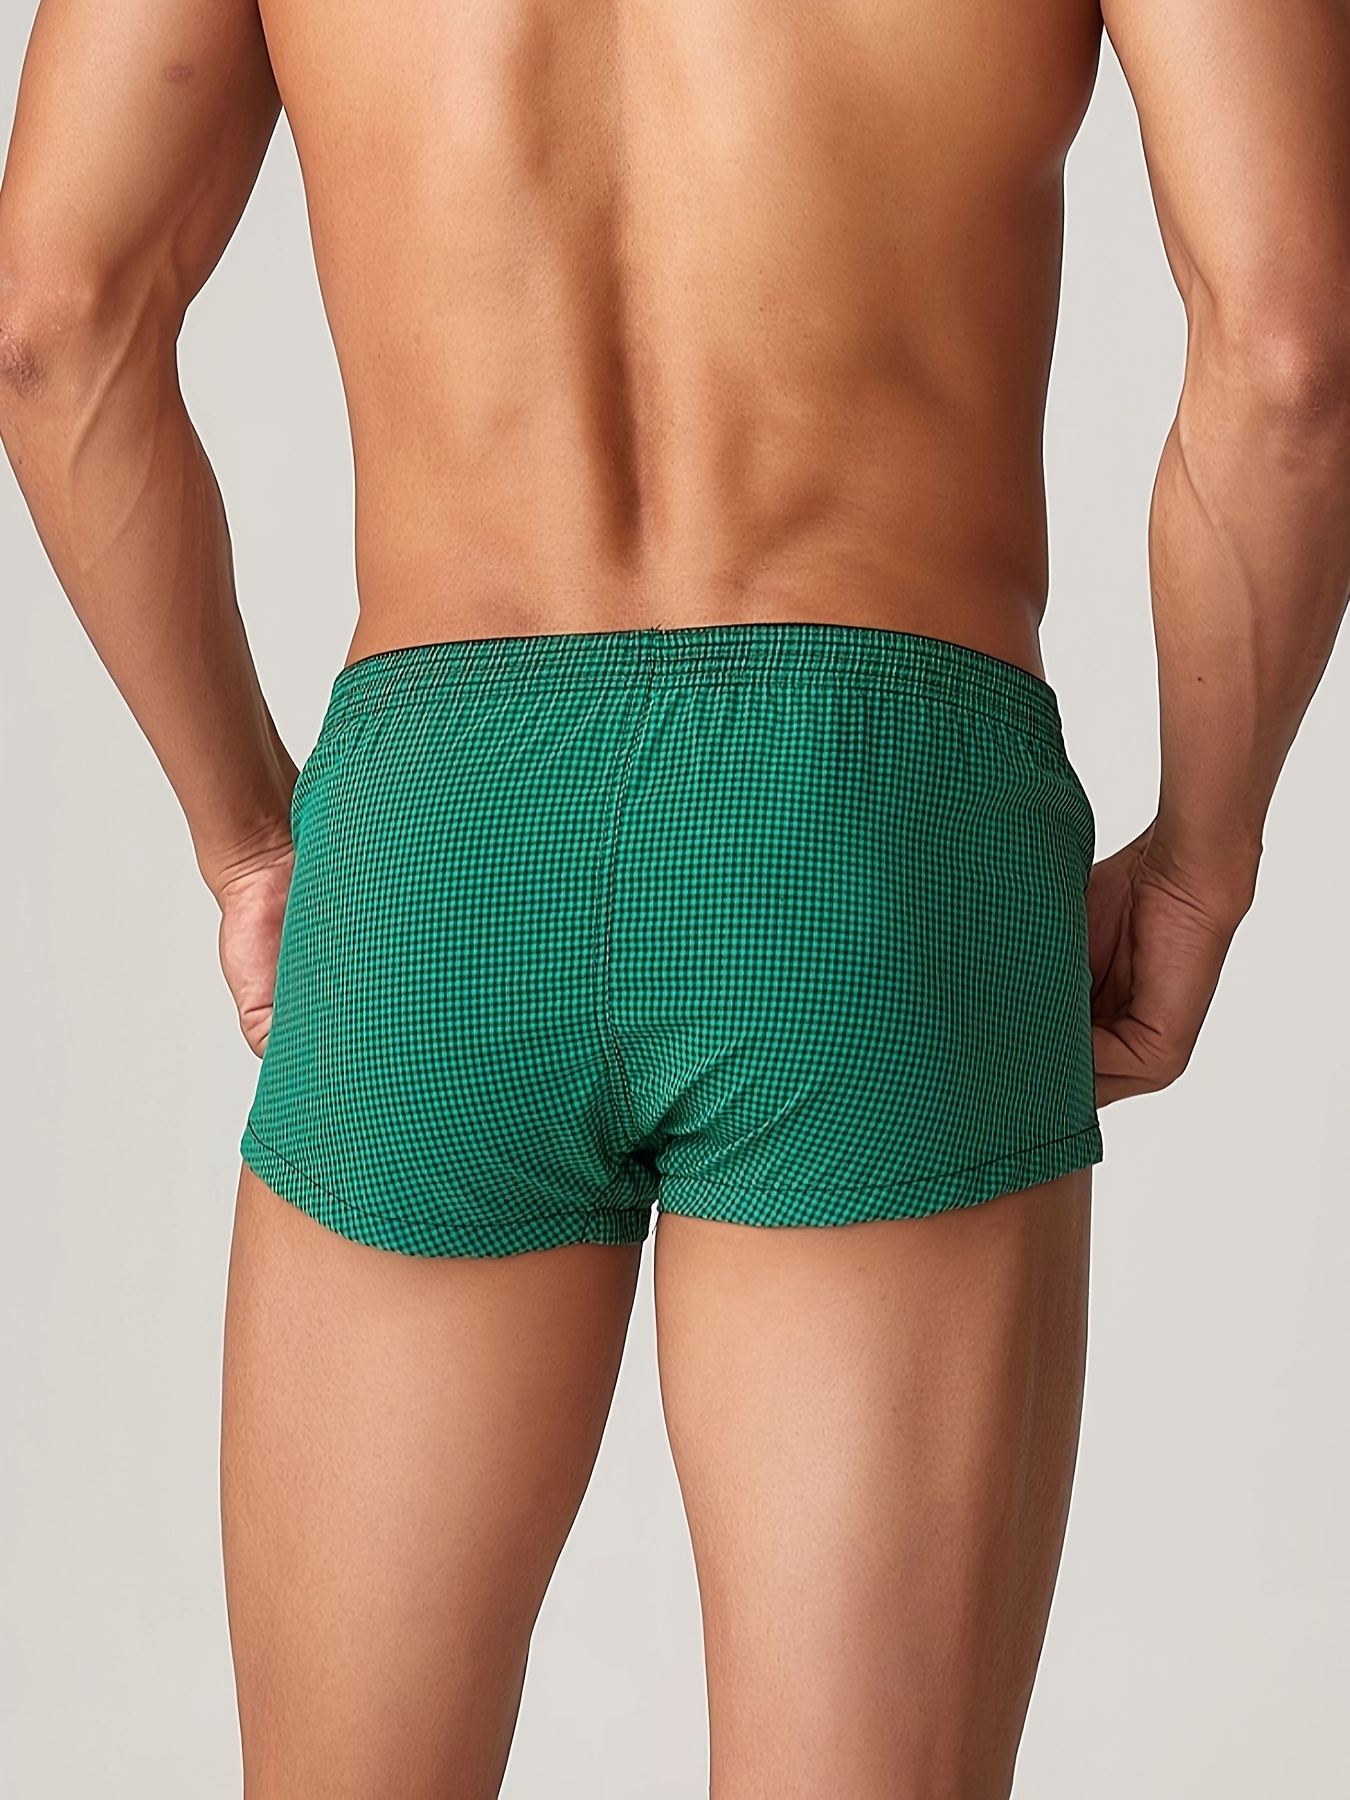 Men Sexy Briefs Underwear Low-Rise Plaid Pajama Trunk Pouch Underpants  Lingerie